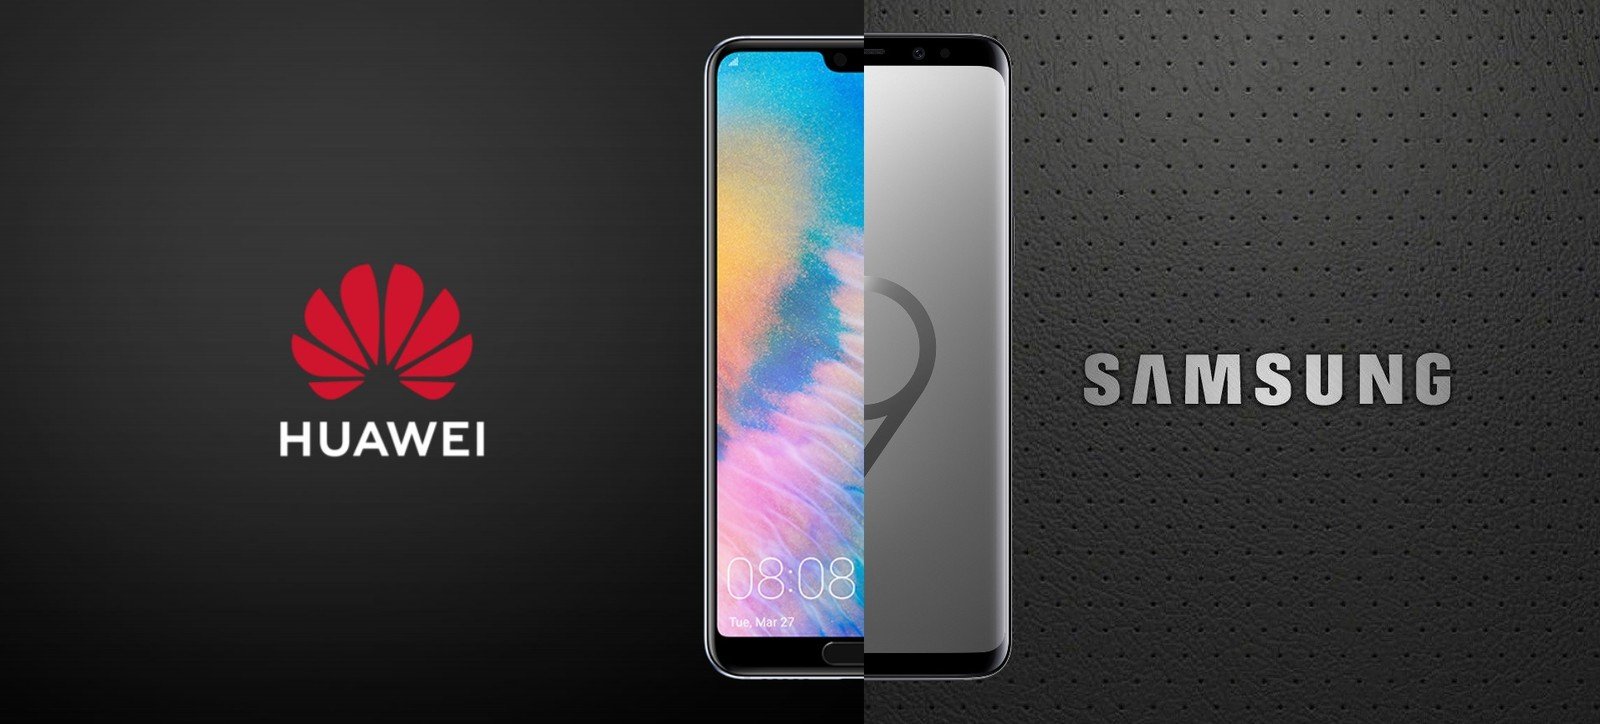 Kto jest numerem 1: Huawei czy Samsung?